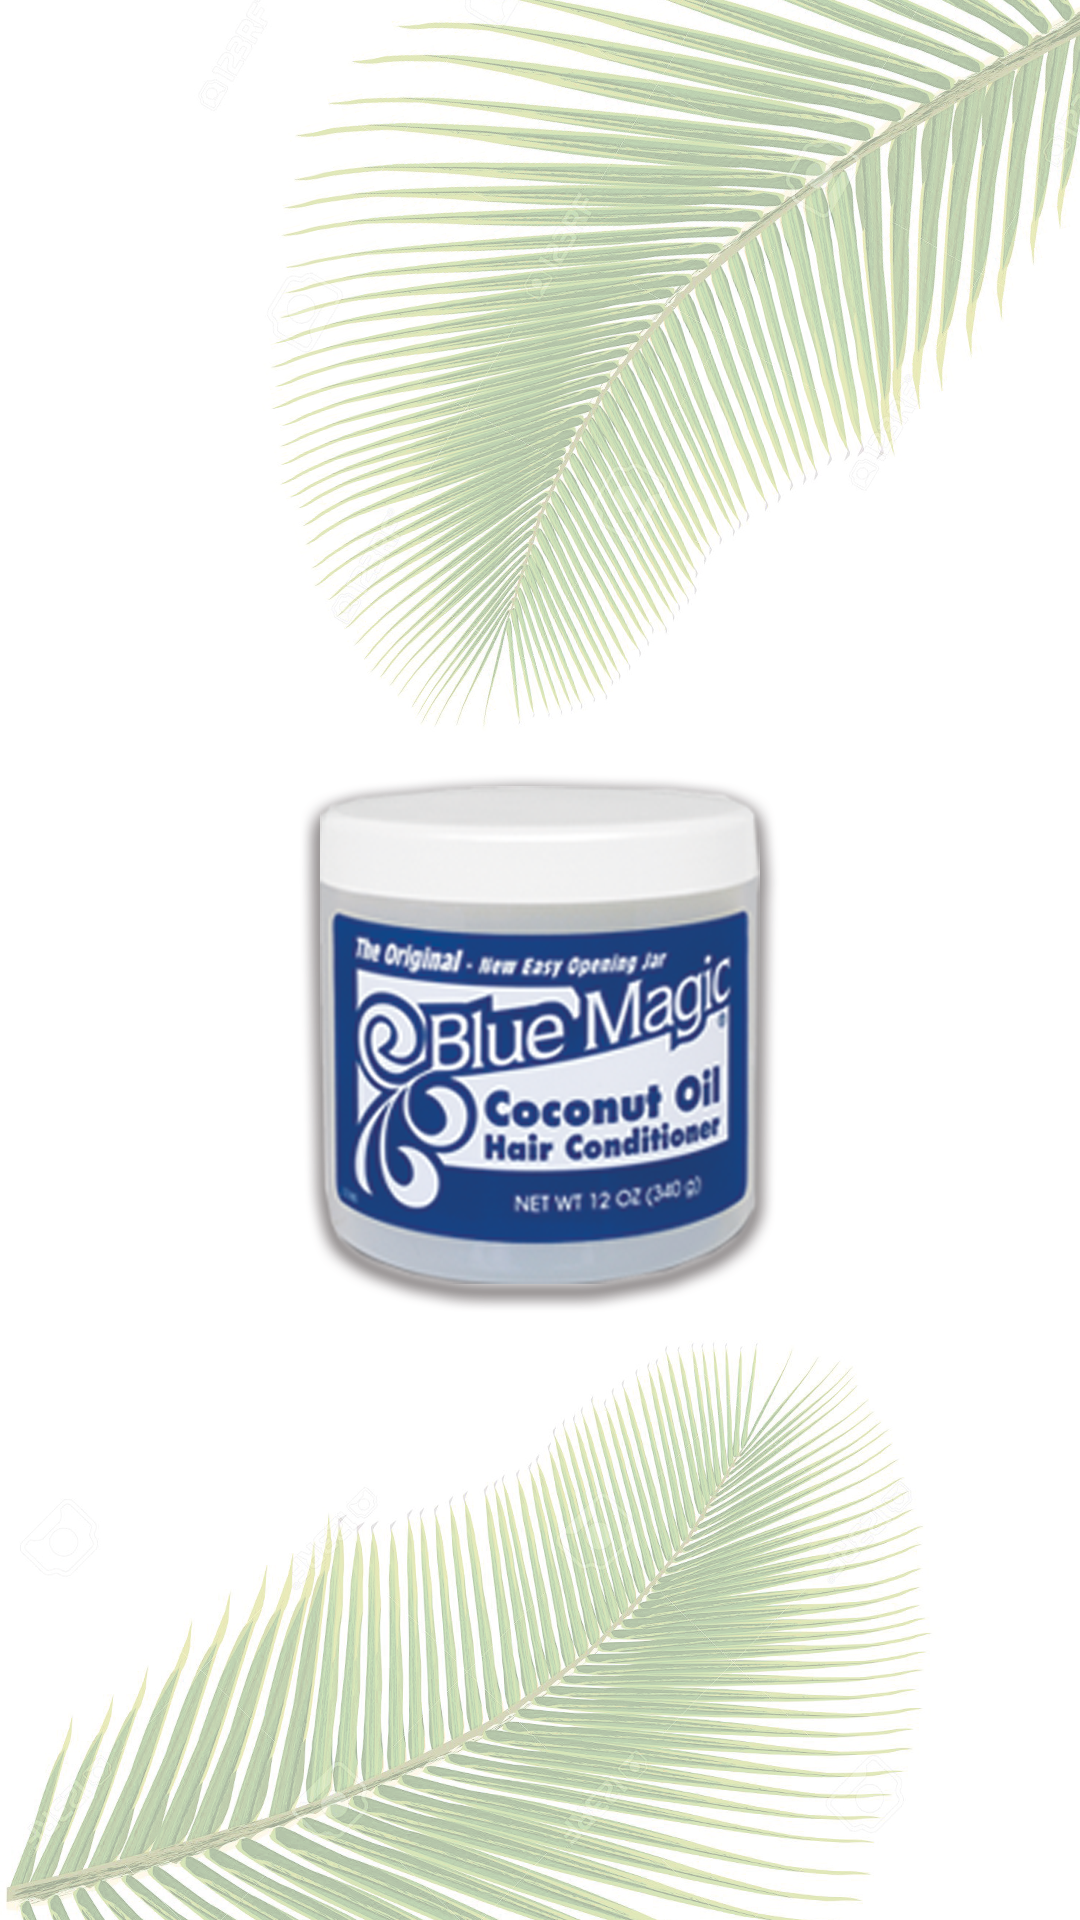 BLUE MAGIC Coconut Oil Hair Conditioner